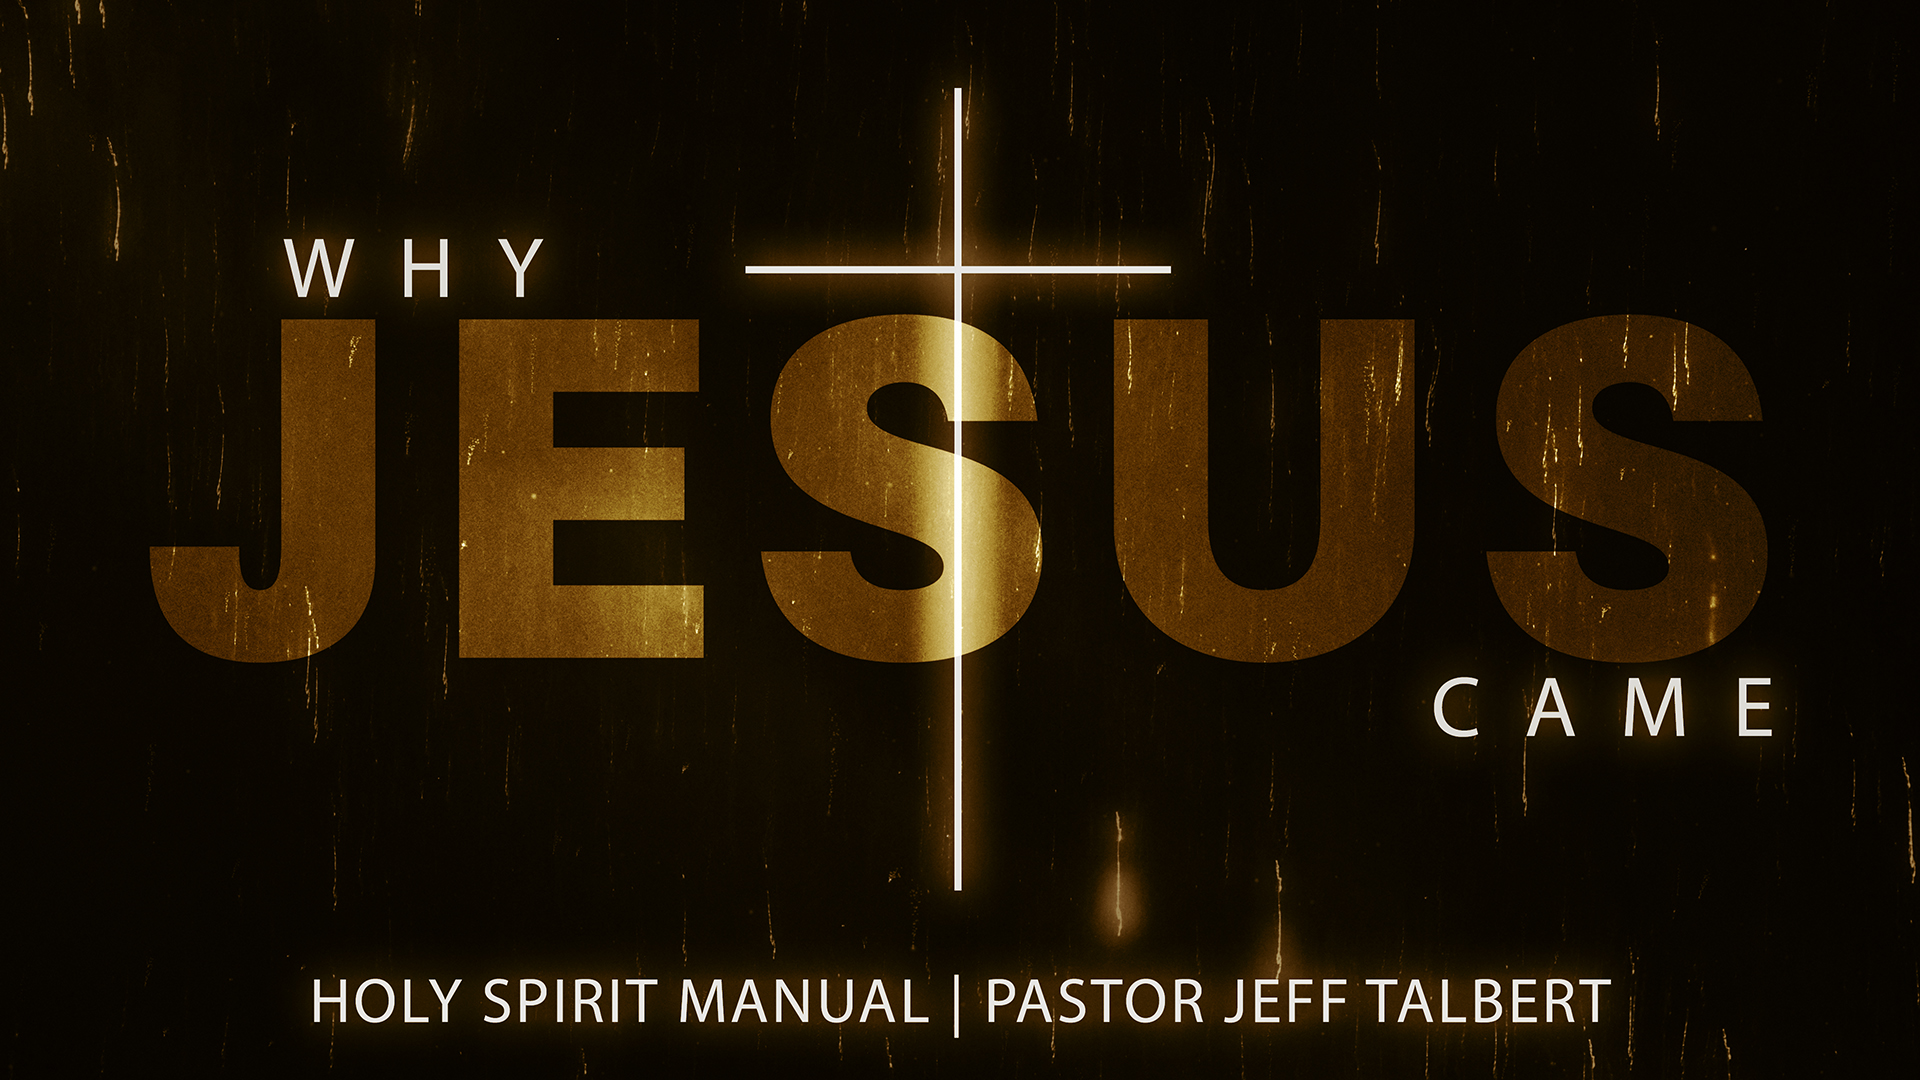 Holy Spirit Manual Image